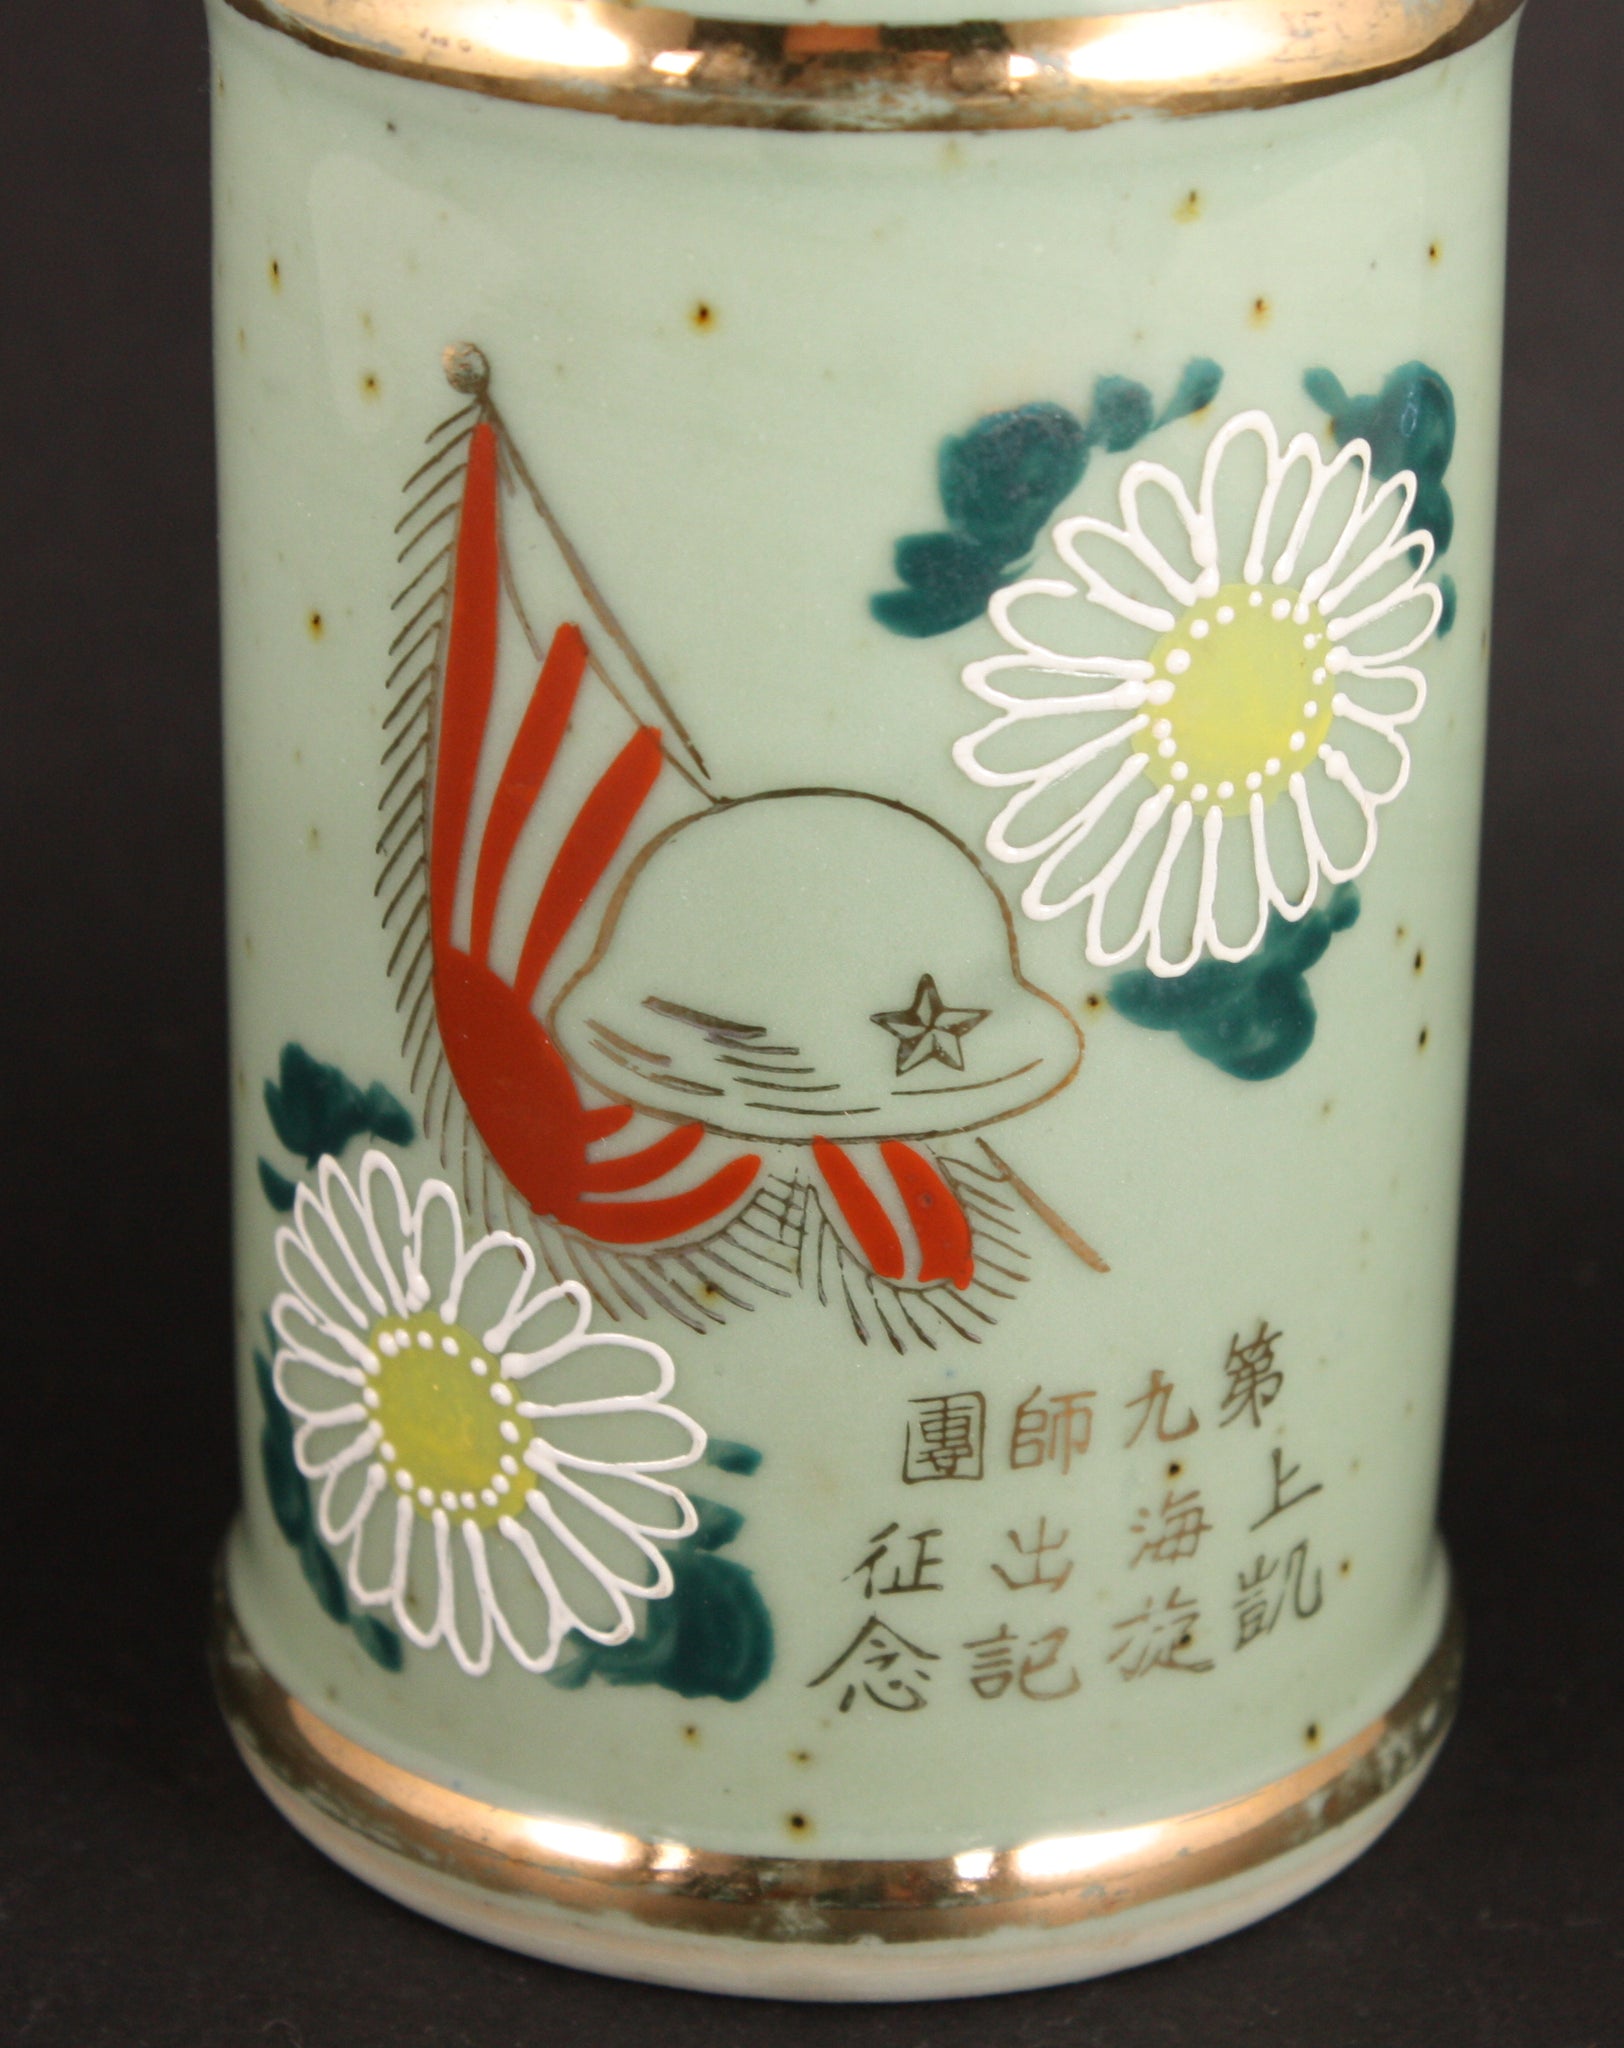 Antique Japanese Military 1932 Shanghai Incident Golden Kite Army Sake Bottle